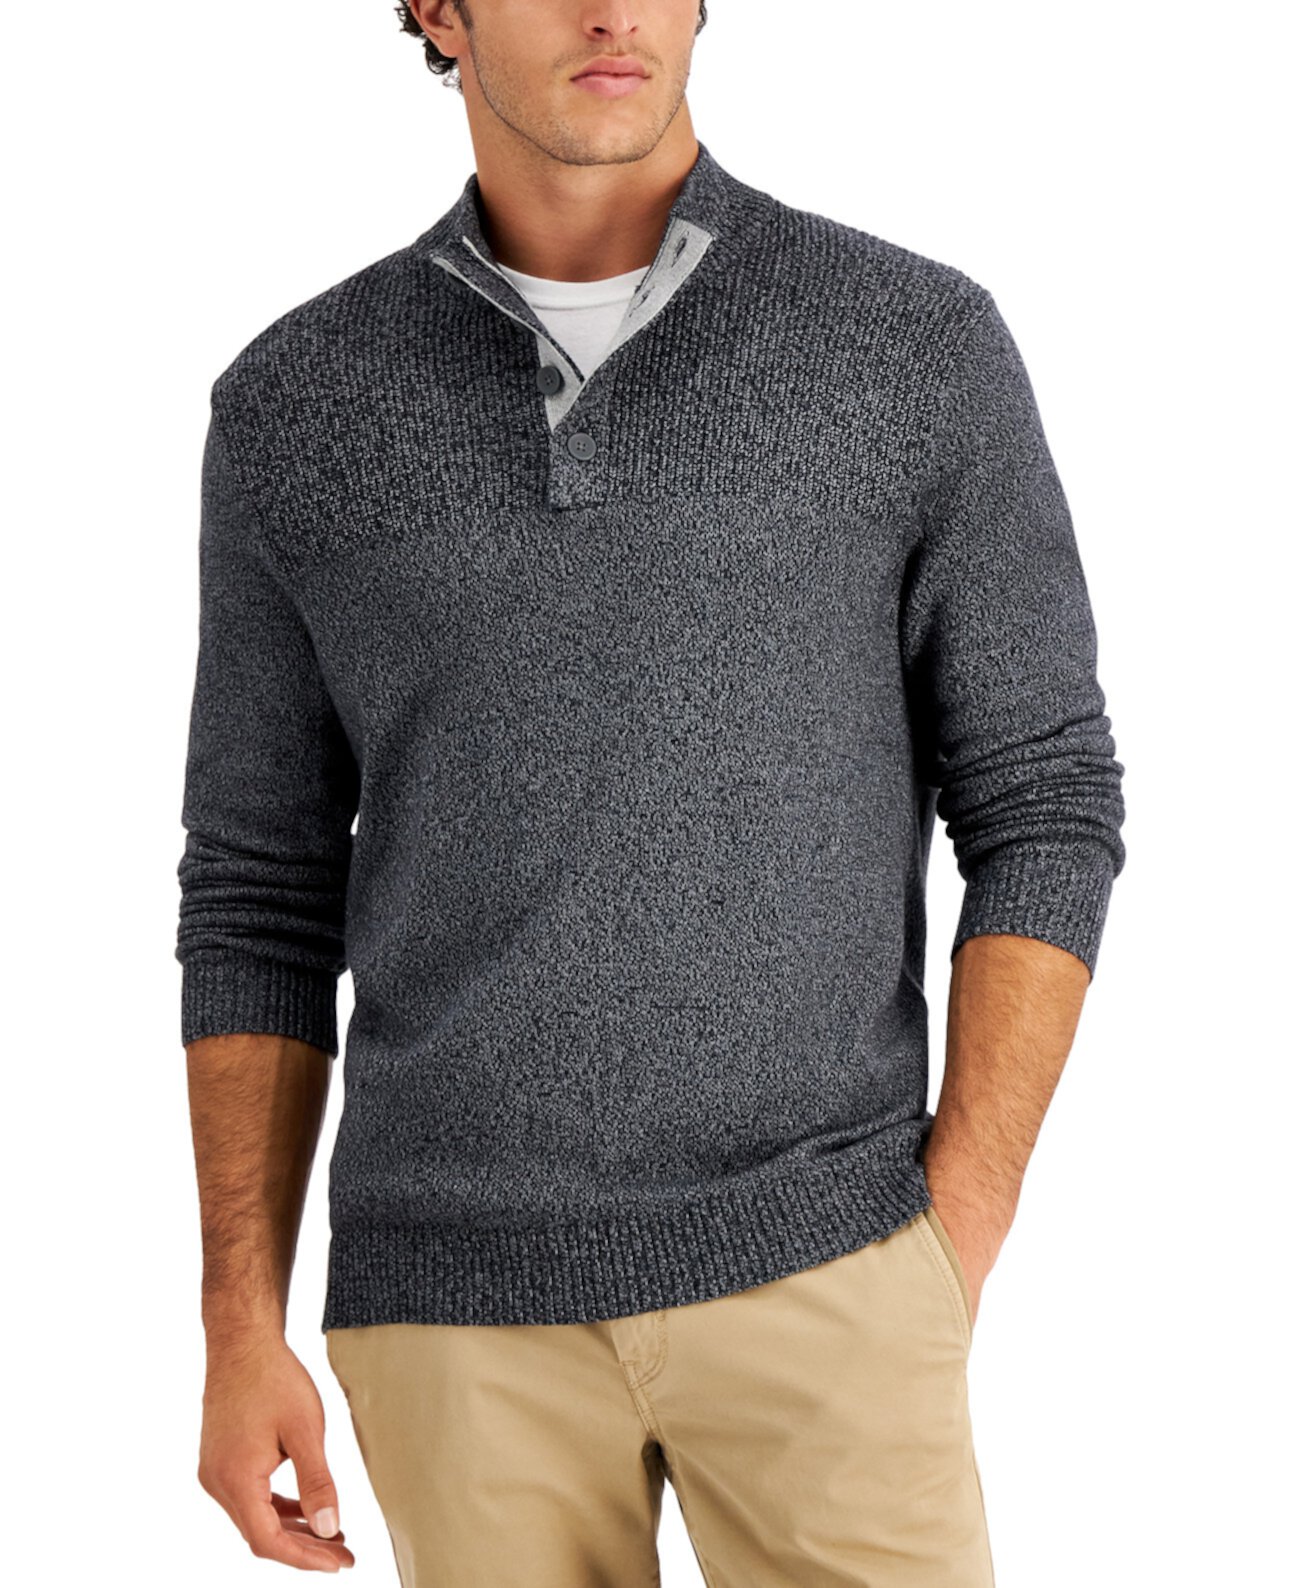 Мужской свитер с четырьмя пуговицами в рубчик, созданный для Macy's Club Room